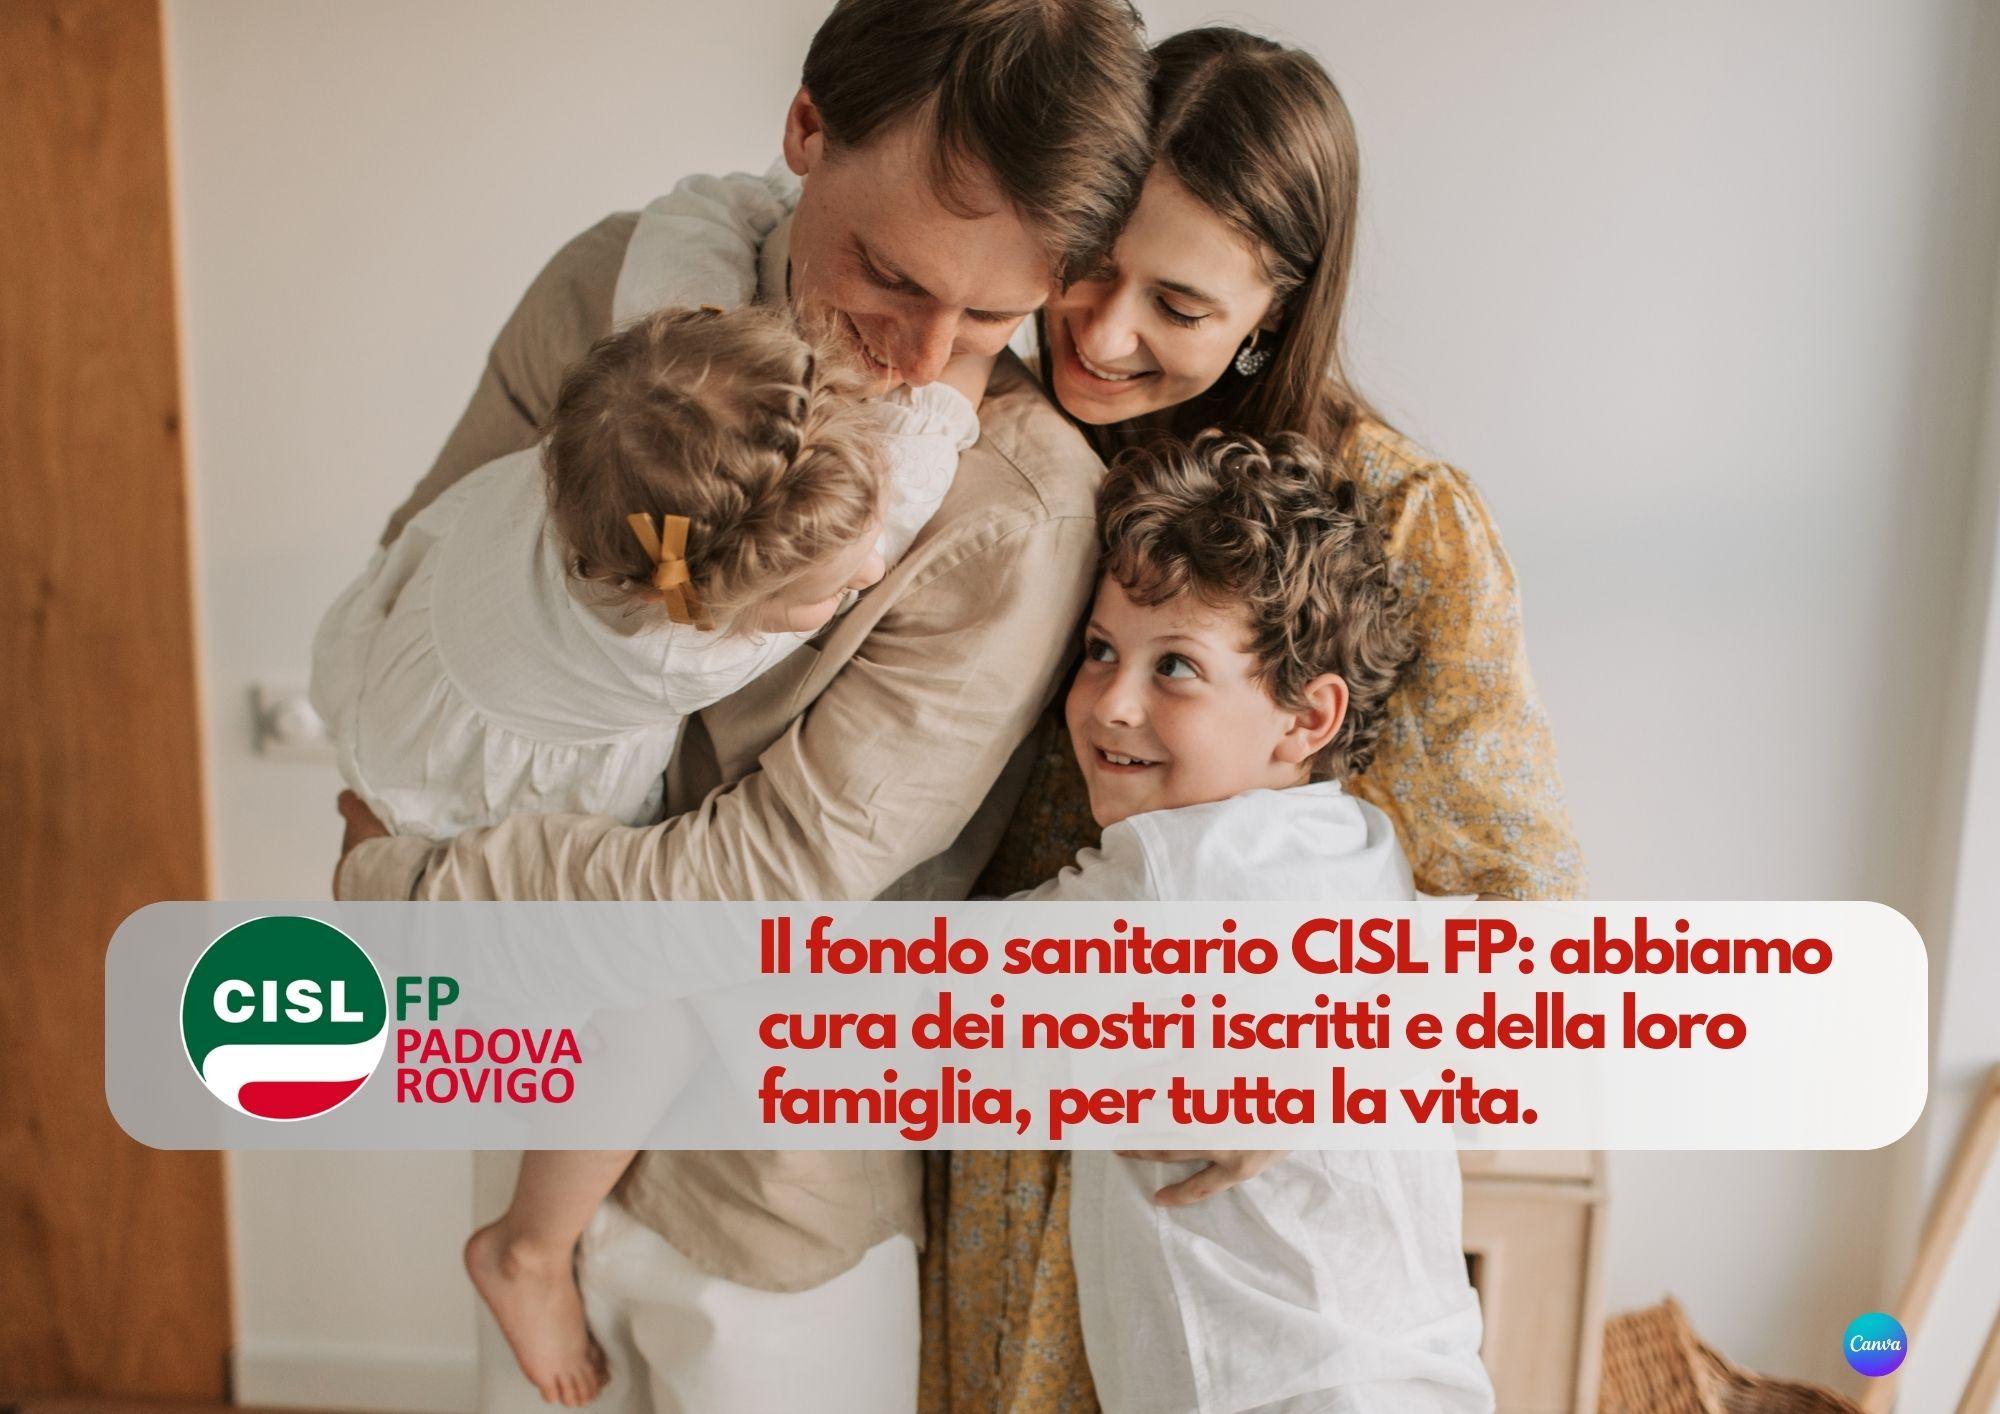 CISL FP Padova Rovigo. Nasce il Fondo Sanitario CISL FP. Anche con patologie pregresse, per tutta la vita